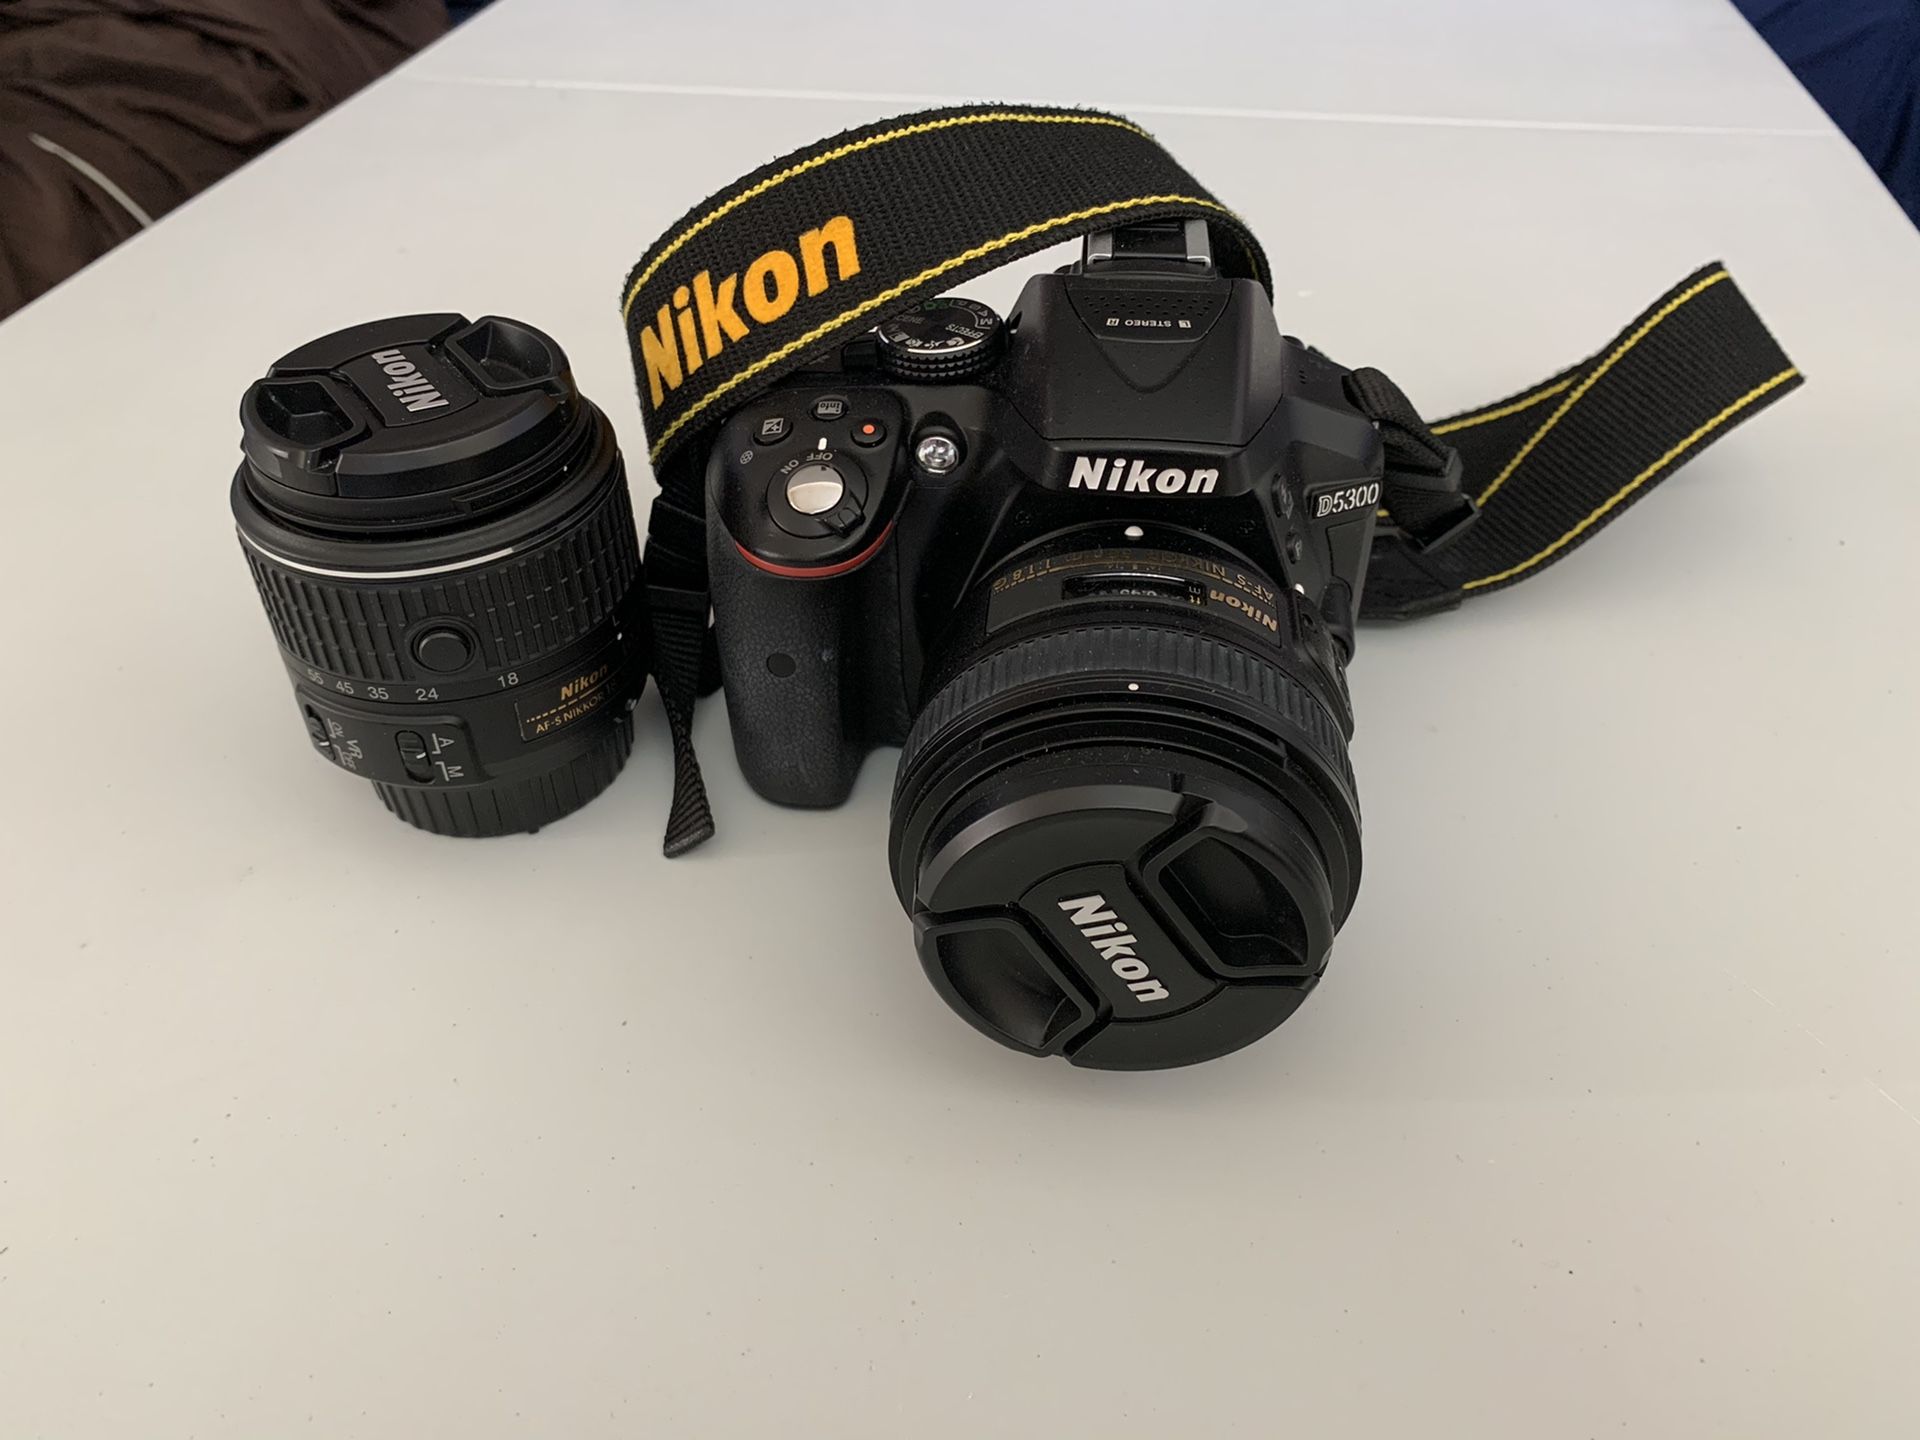 Nikon d5300 DSLR camera